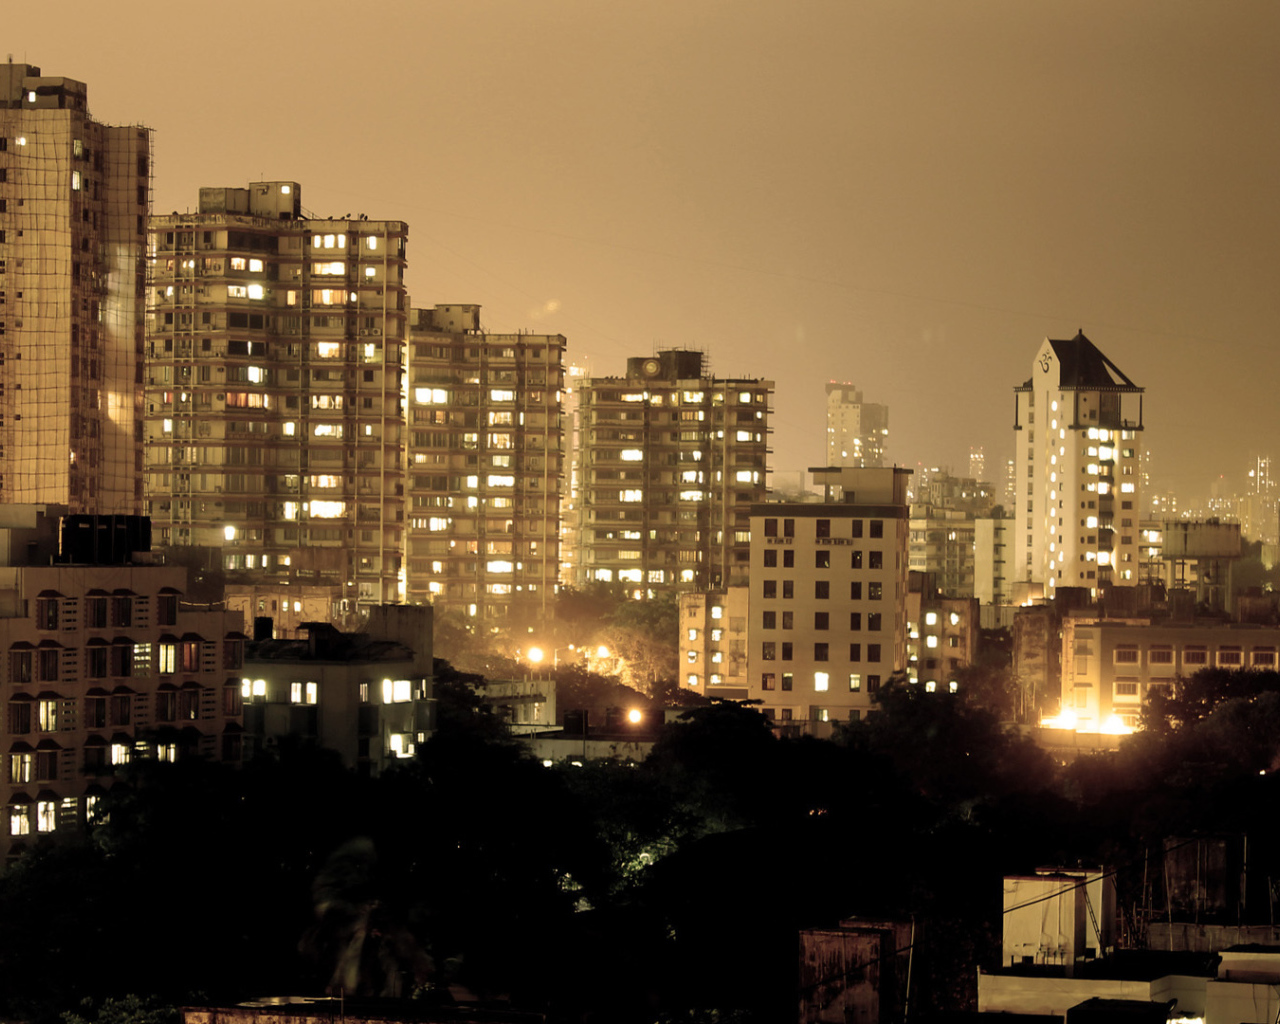 Ночной город Мумбай